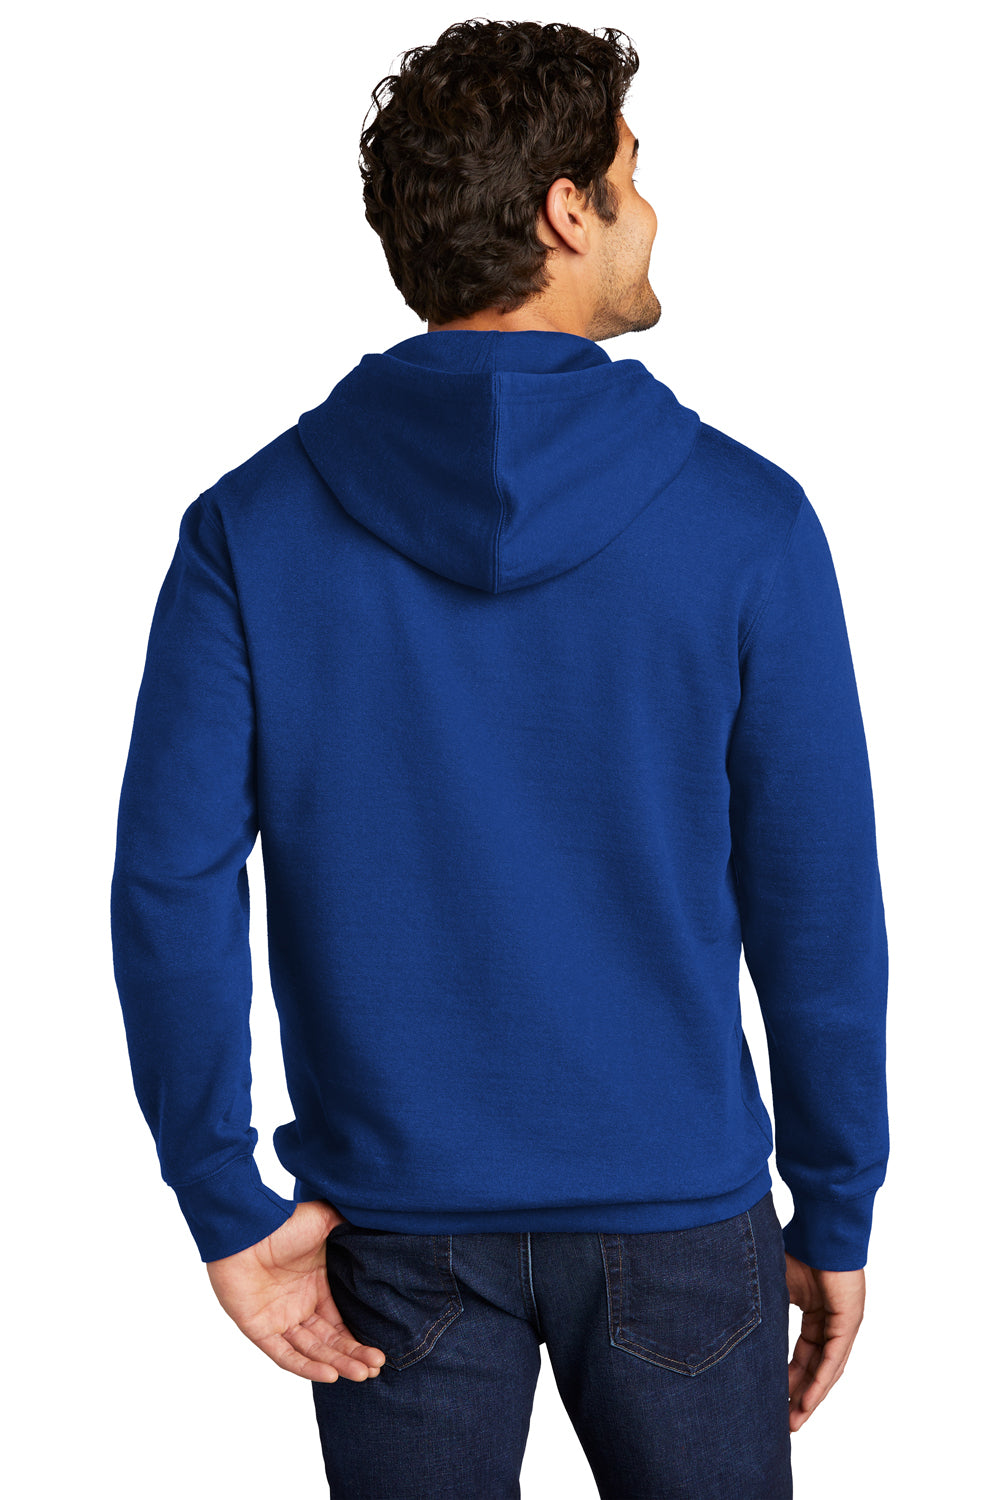 District Mens Very Important Fleece Hooded Sweatshirt Hoodie Deep Royal Blue Side